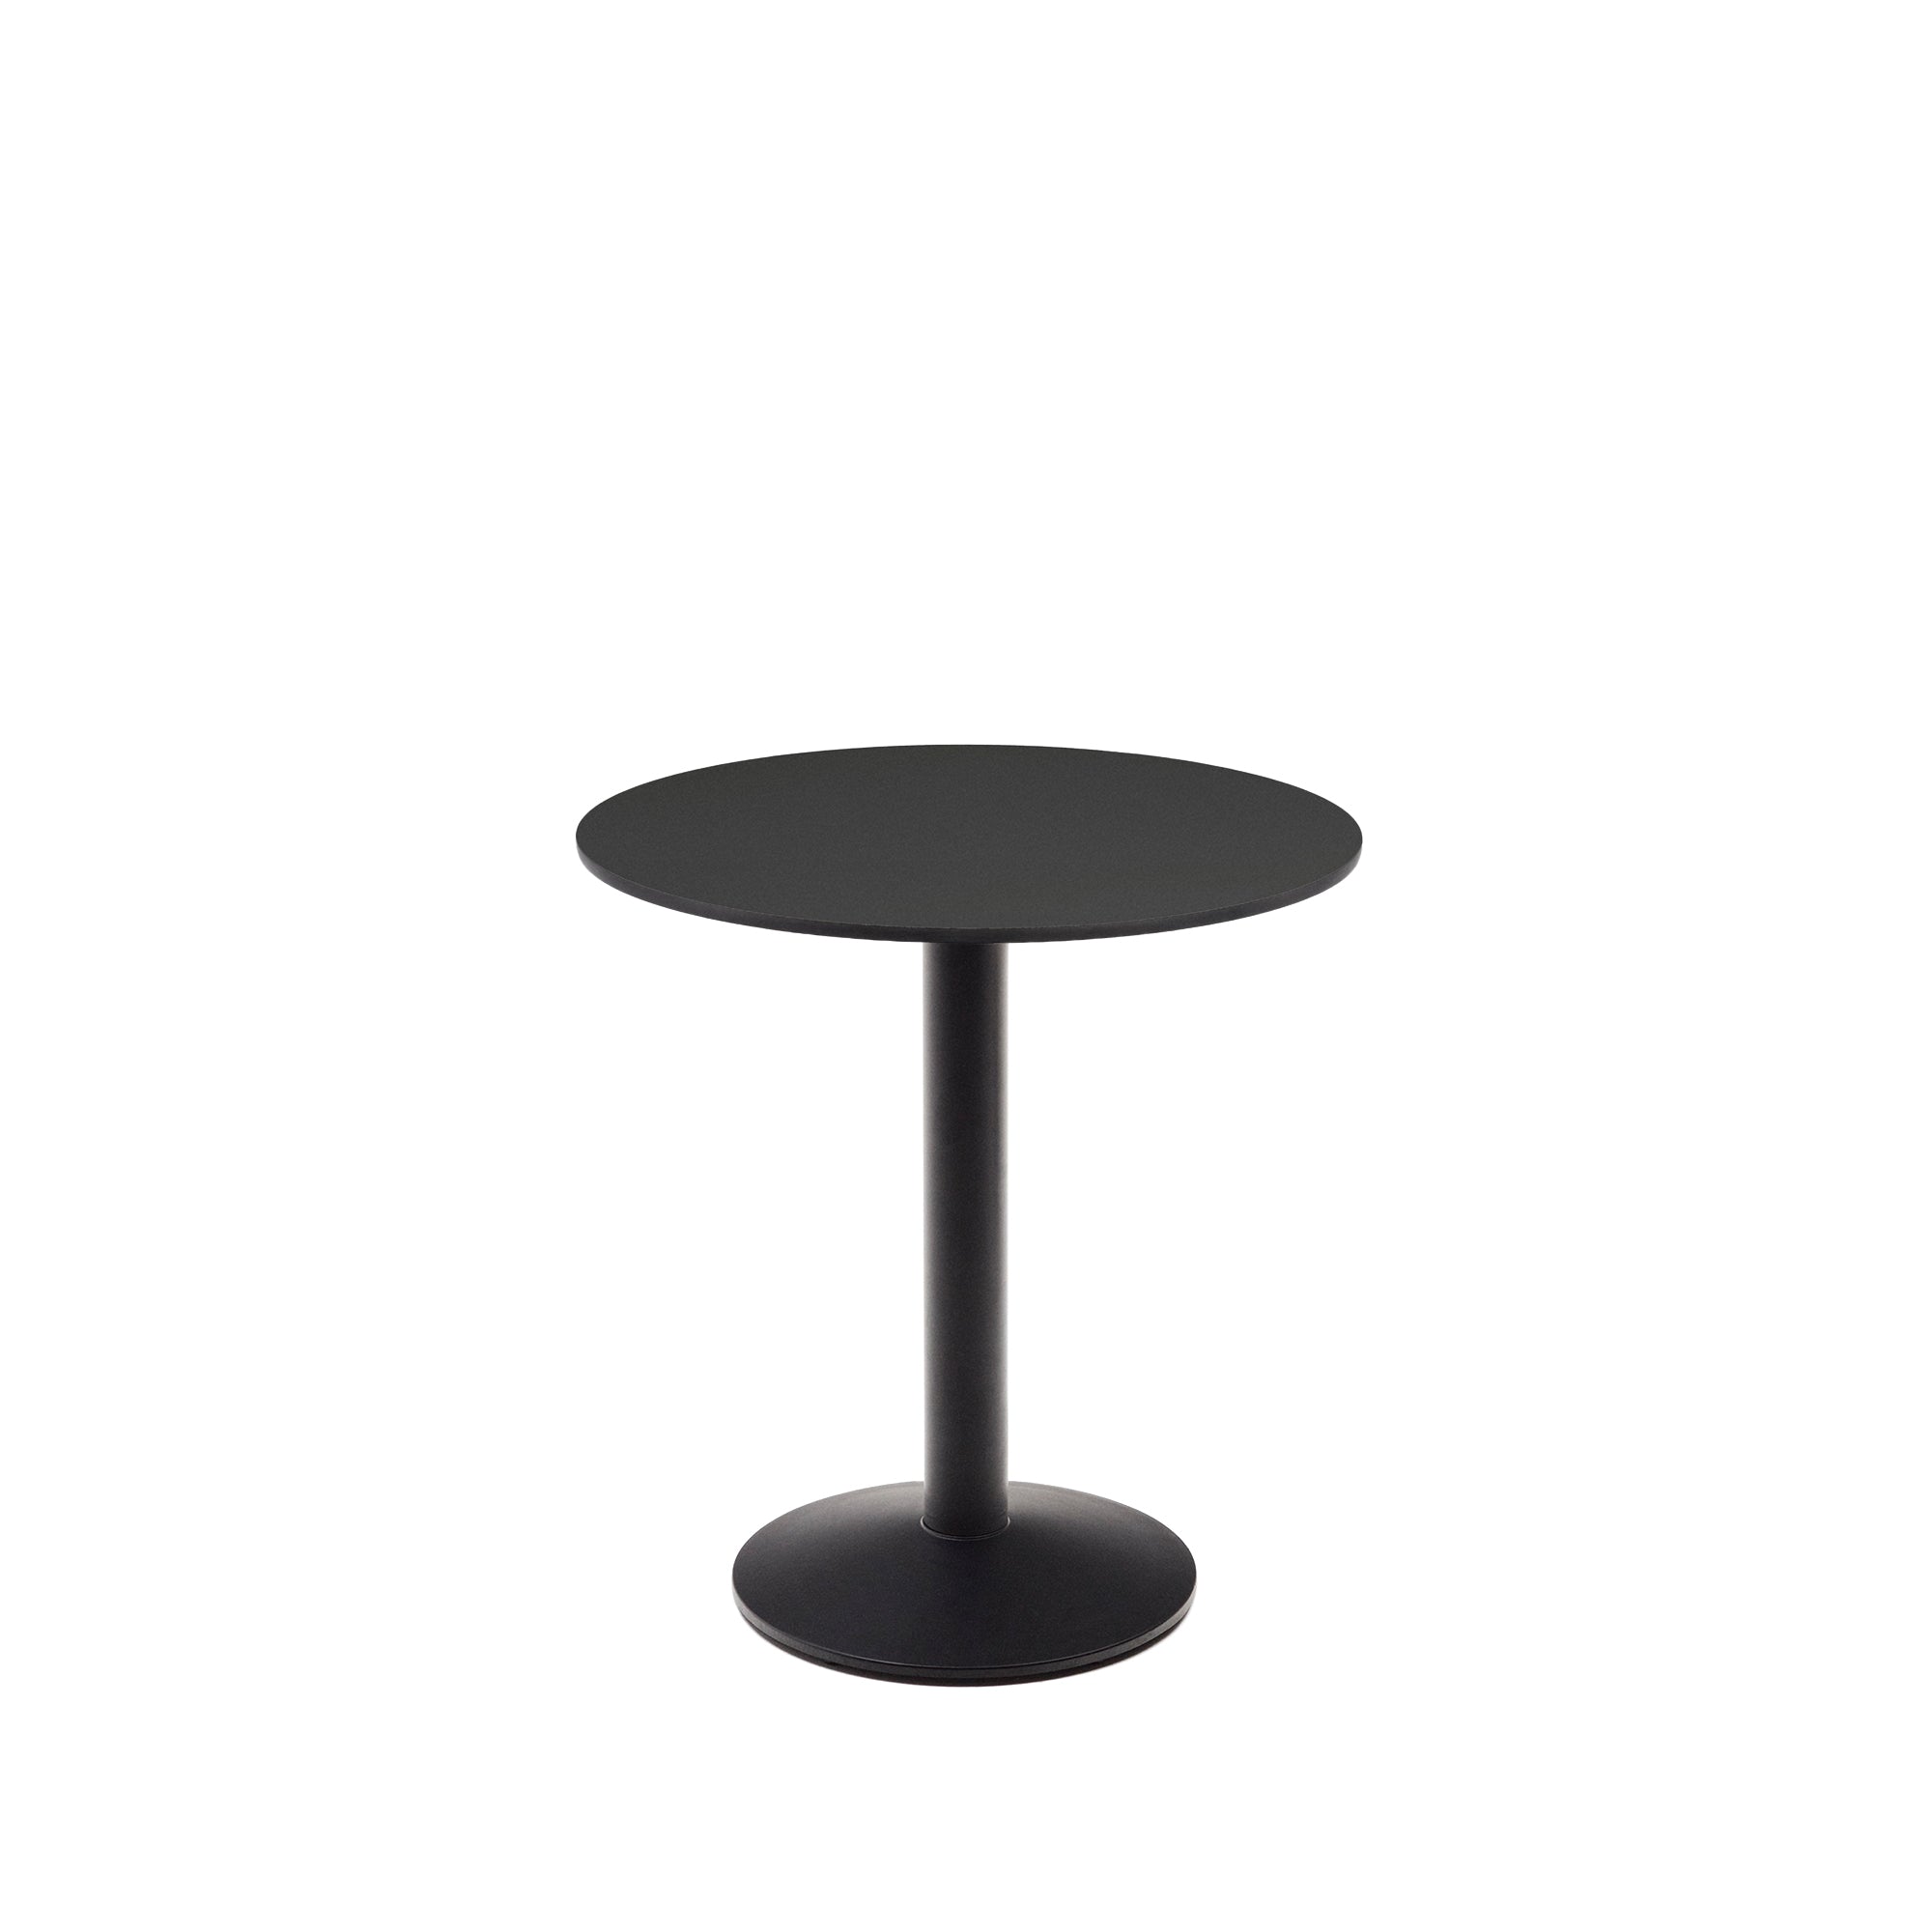 Esilda kerek kültéri asztal fekete színben, fémlábbal, festett fekete színben, Ø 70 x 70 cm